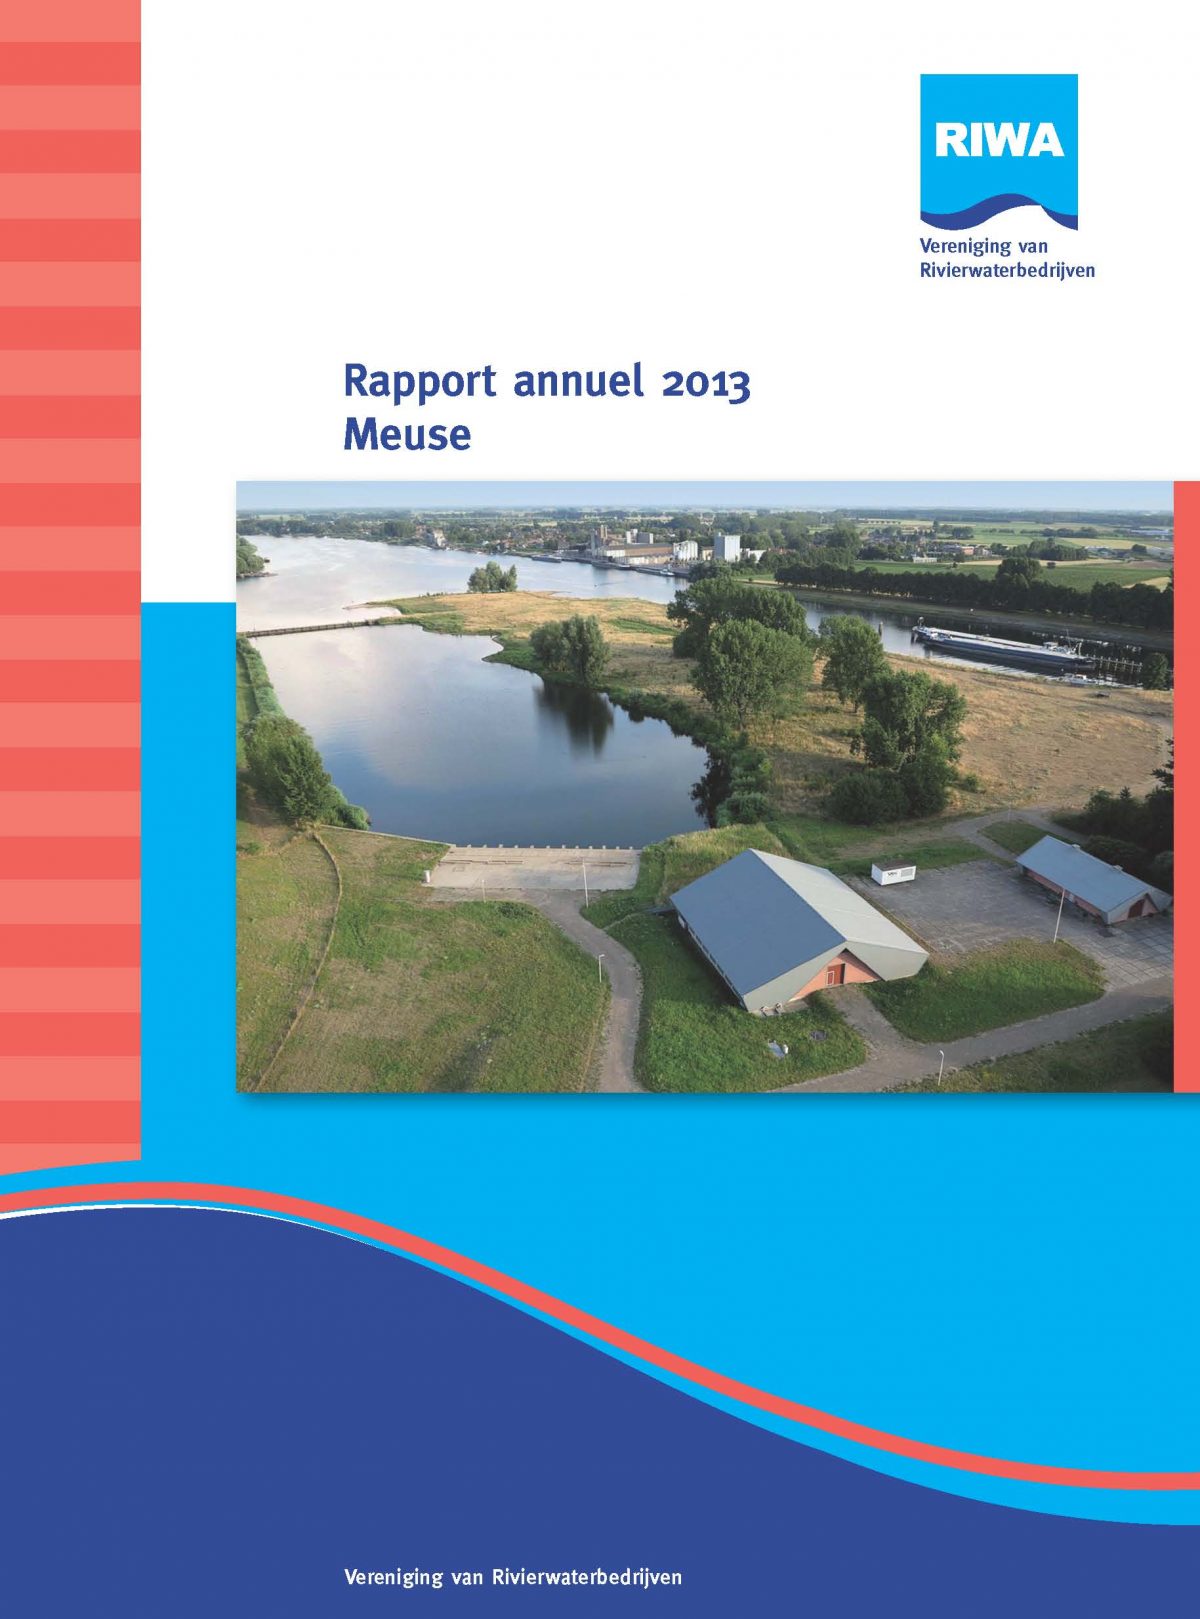 RIWA Rapport Annuel 2013 La Meuse